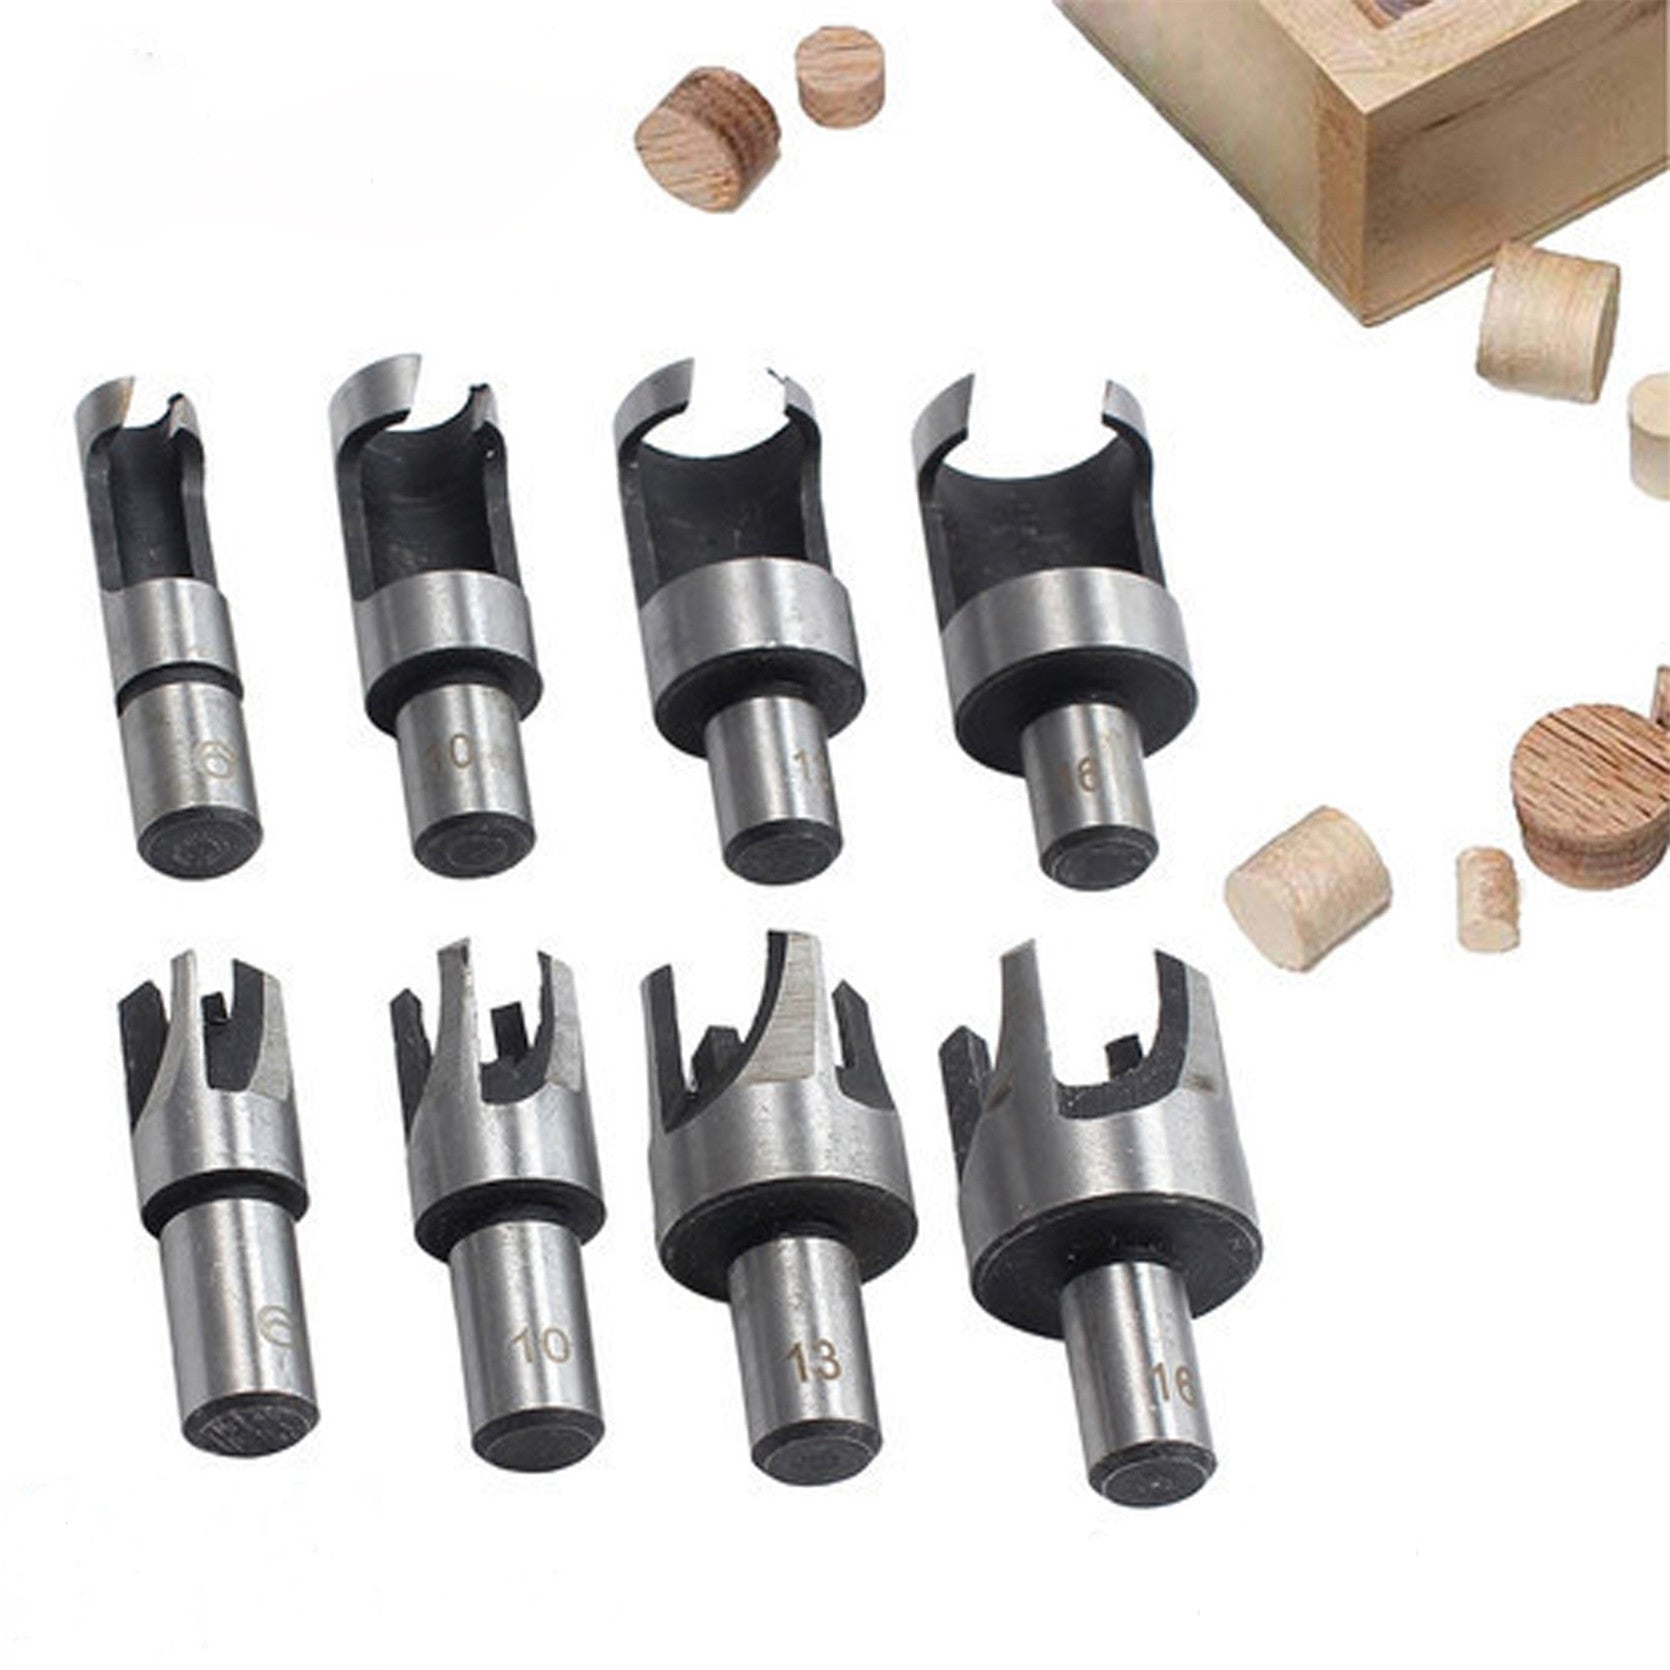 findmall 8 Pcs Carbon Steel Wood Plug Hole Cutter Dowel Maker Cutting Shank Drill Bit Set FINDMALLPARTS